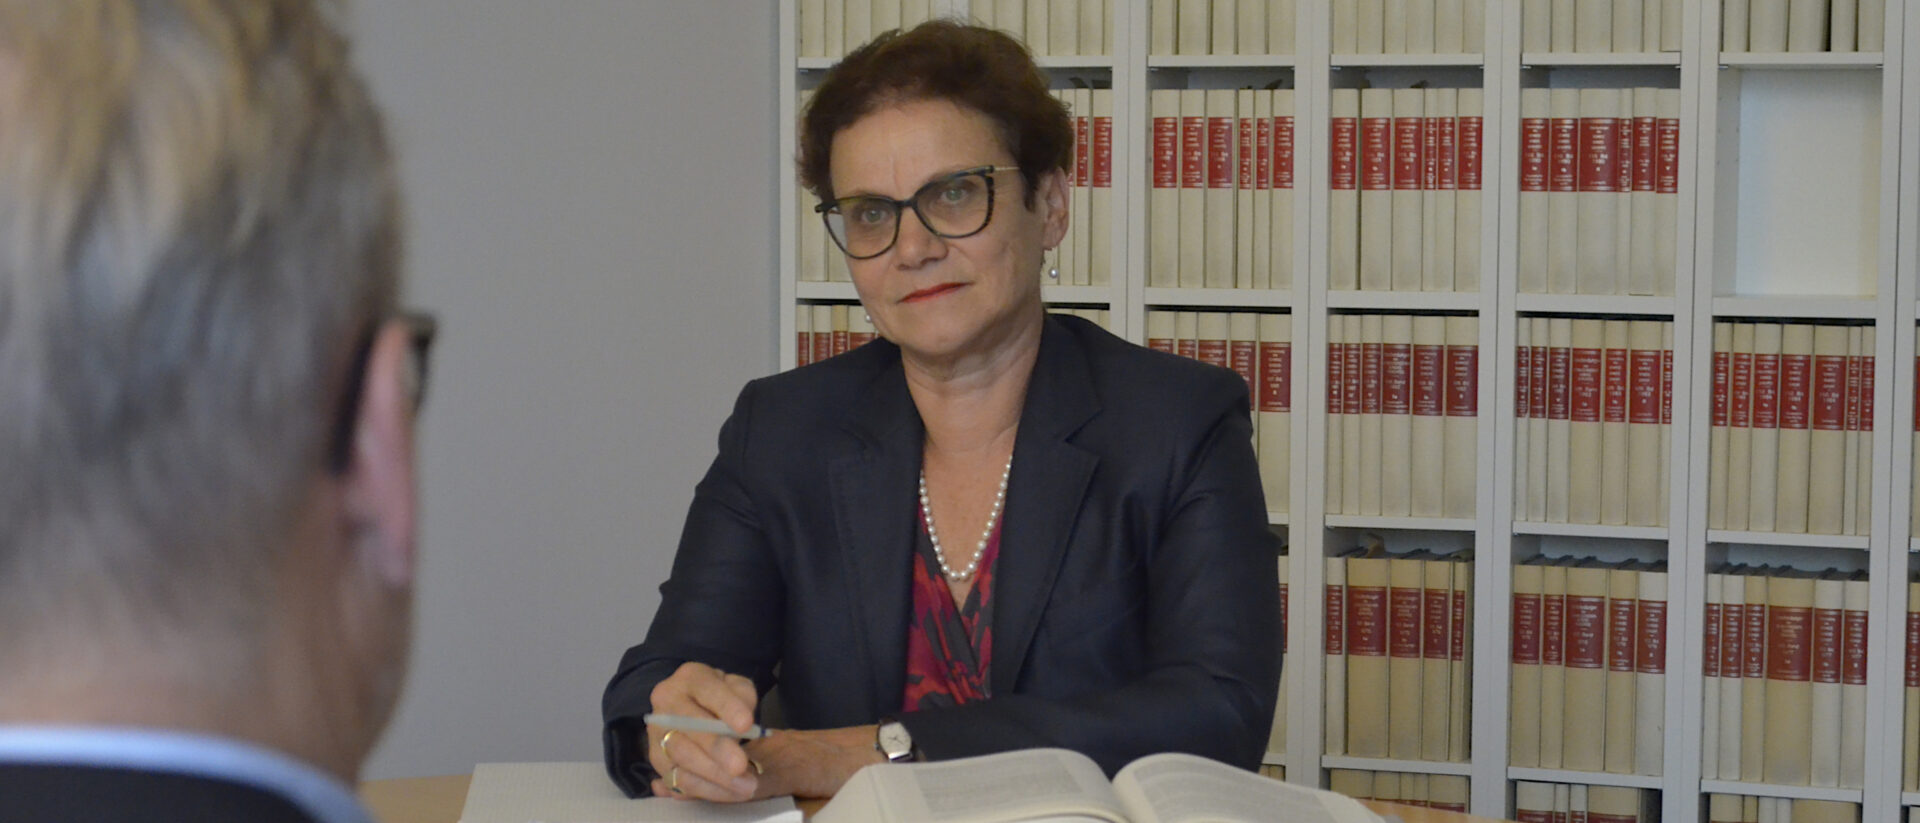 Cristina Schiavi unterstützt als Juristin Menschen, die mit Versicherungen zu kämpfen haben